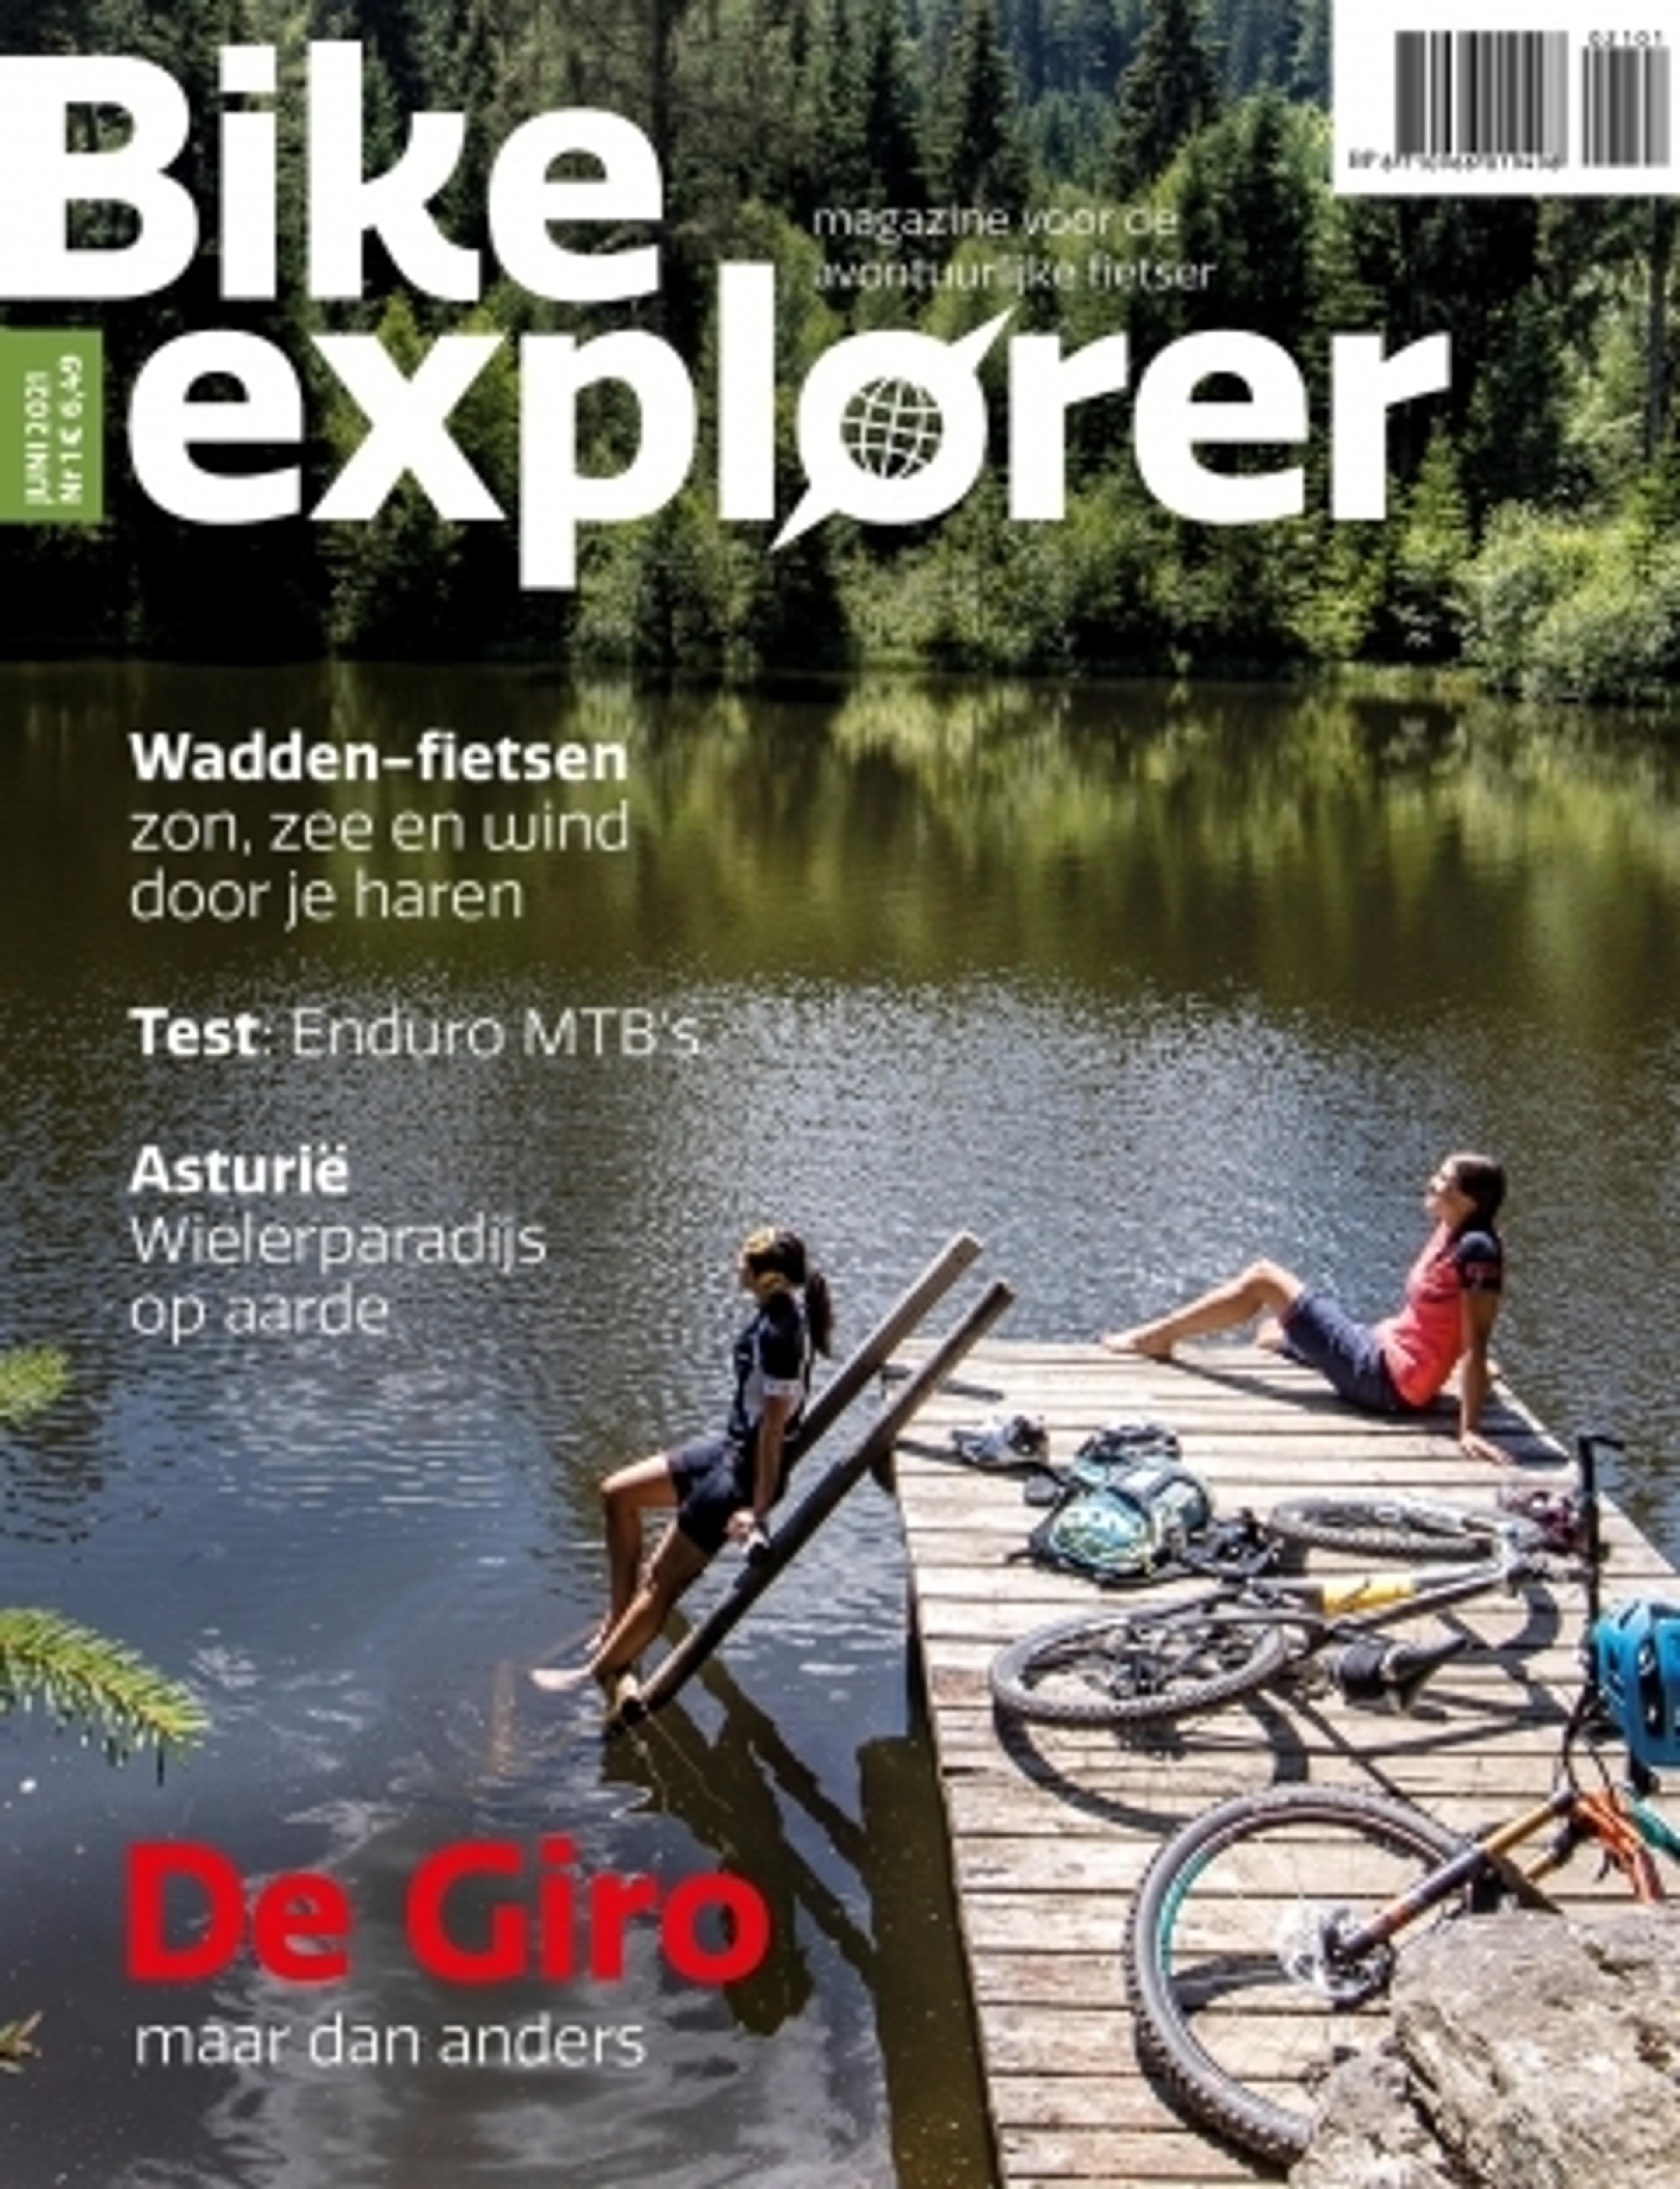 BIKE explorer, het nieuwe magazine in Nederland en België voor de recreatieve, avontuurlijke fietser